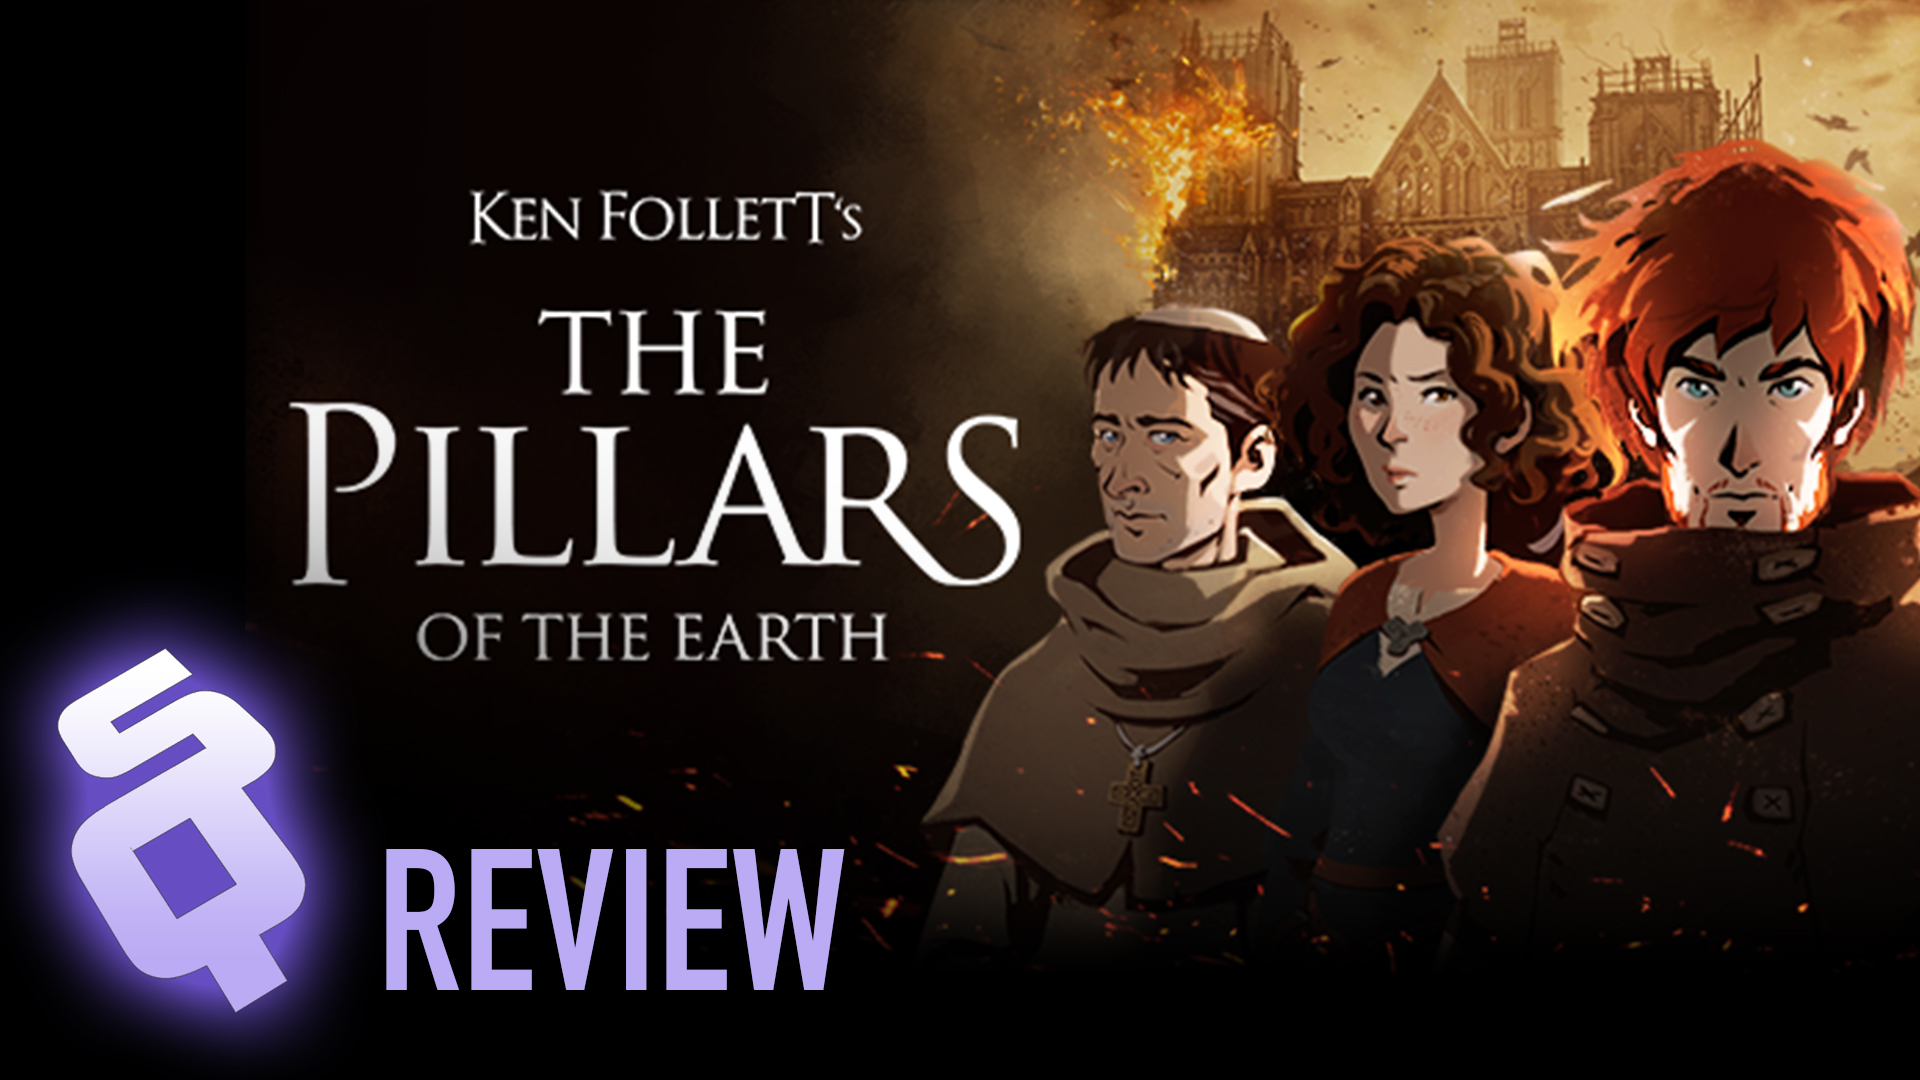 Ken Follett’s The Pillars of the Earth review